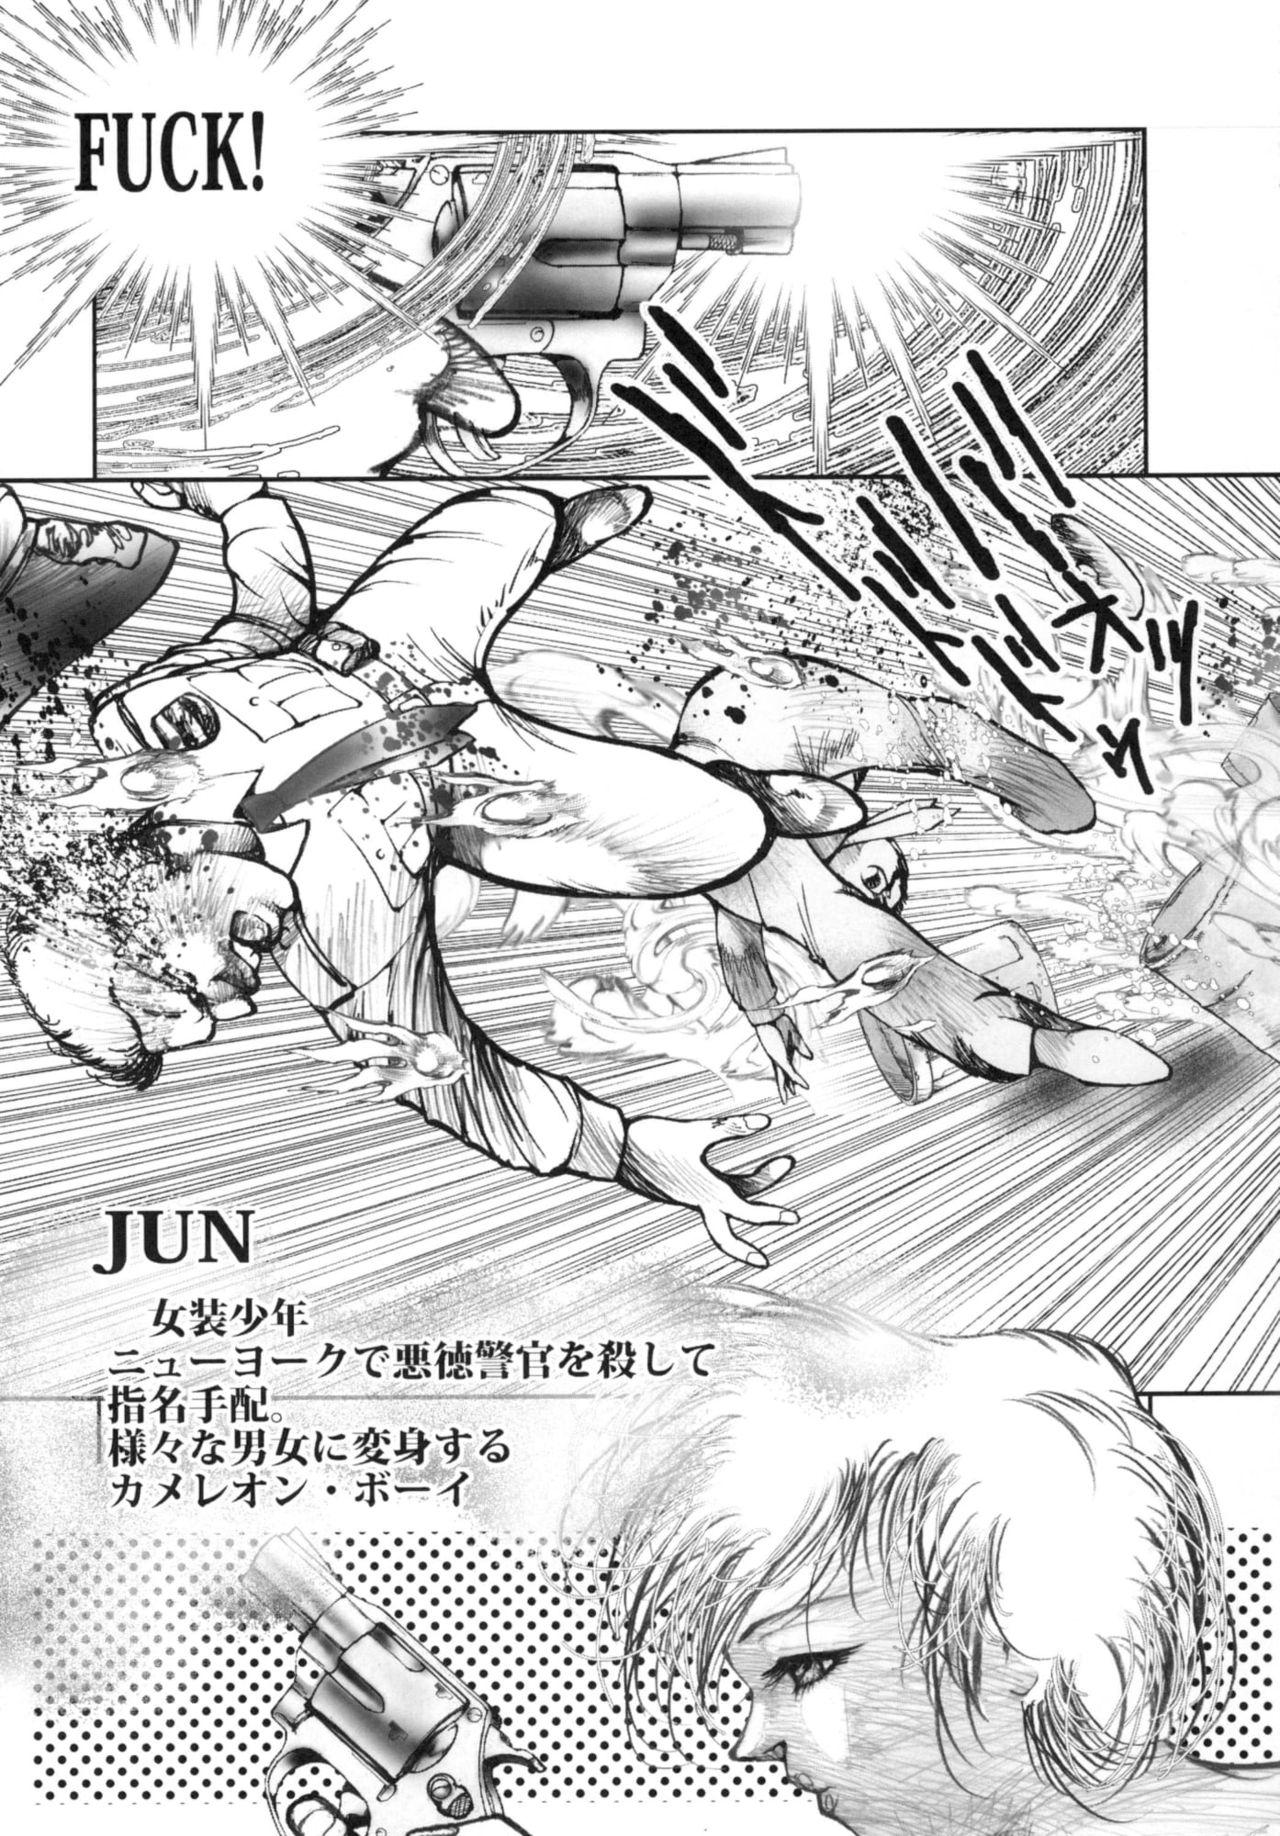 Desi Chain Heat - Original Himitsu no akko-chan Majokko megu-chan Bj - Page 5